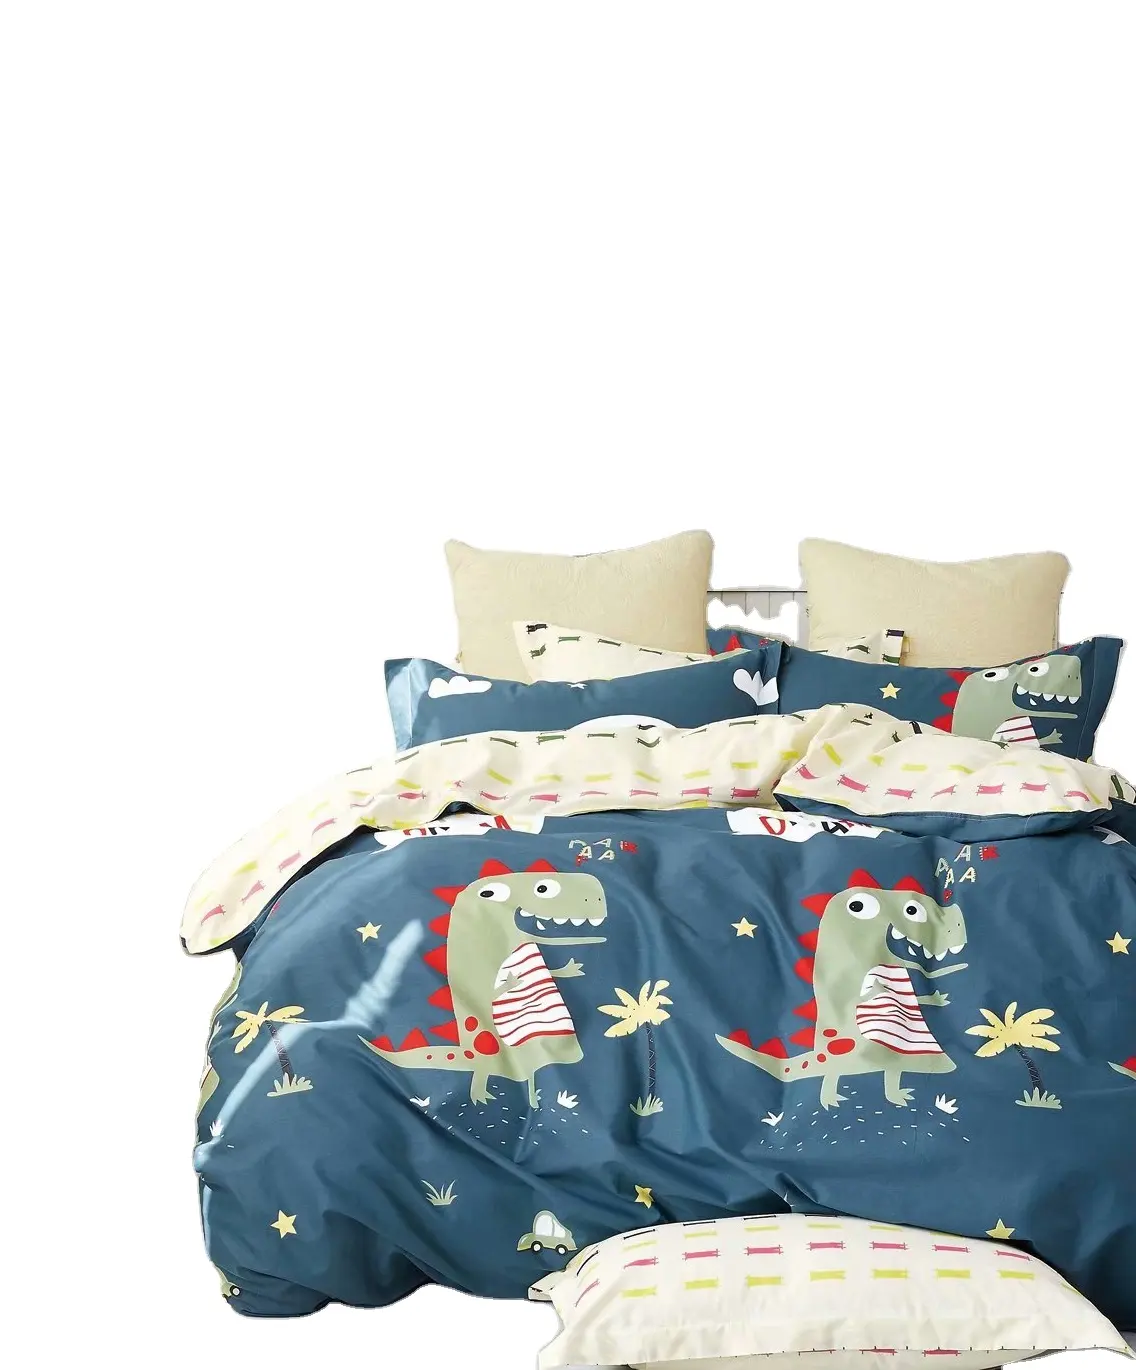 100% algodão impressão reativa jogo de cama por atacado para crianças